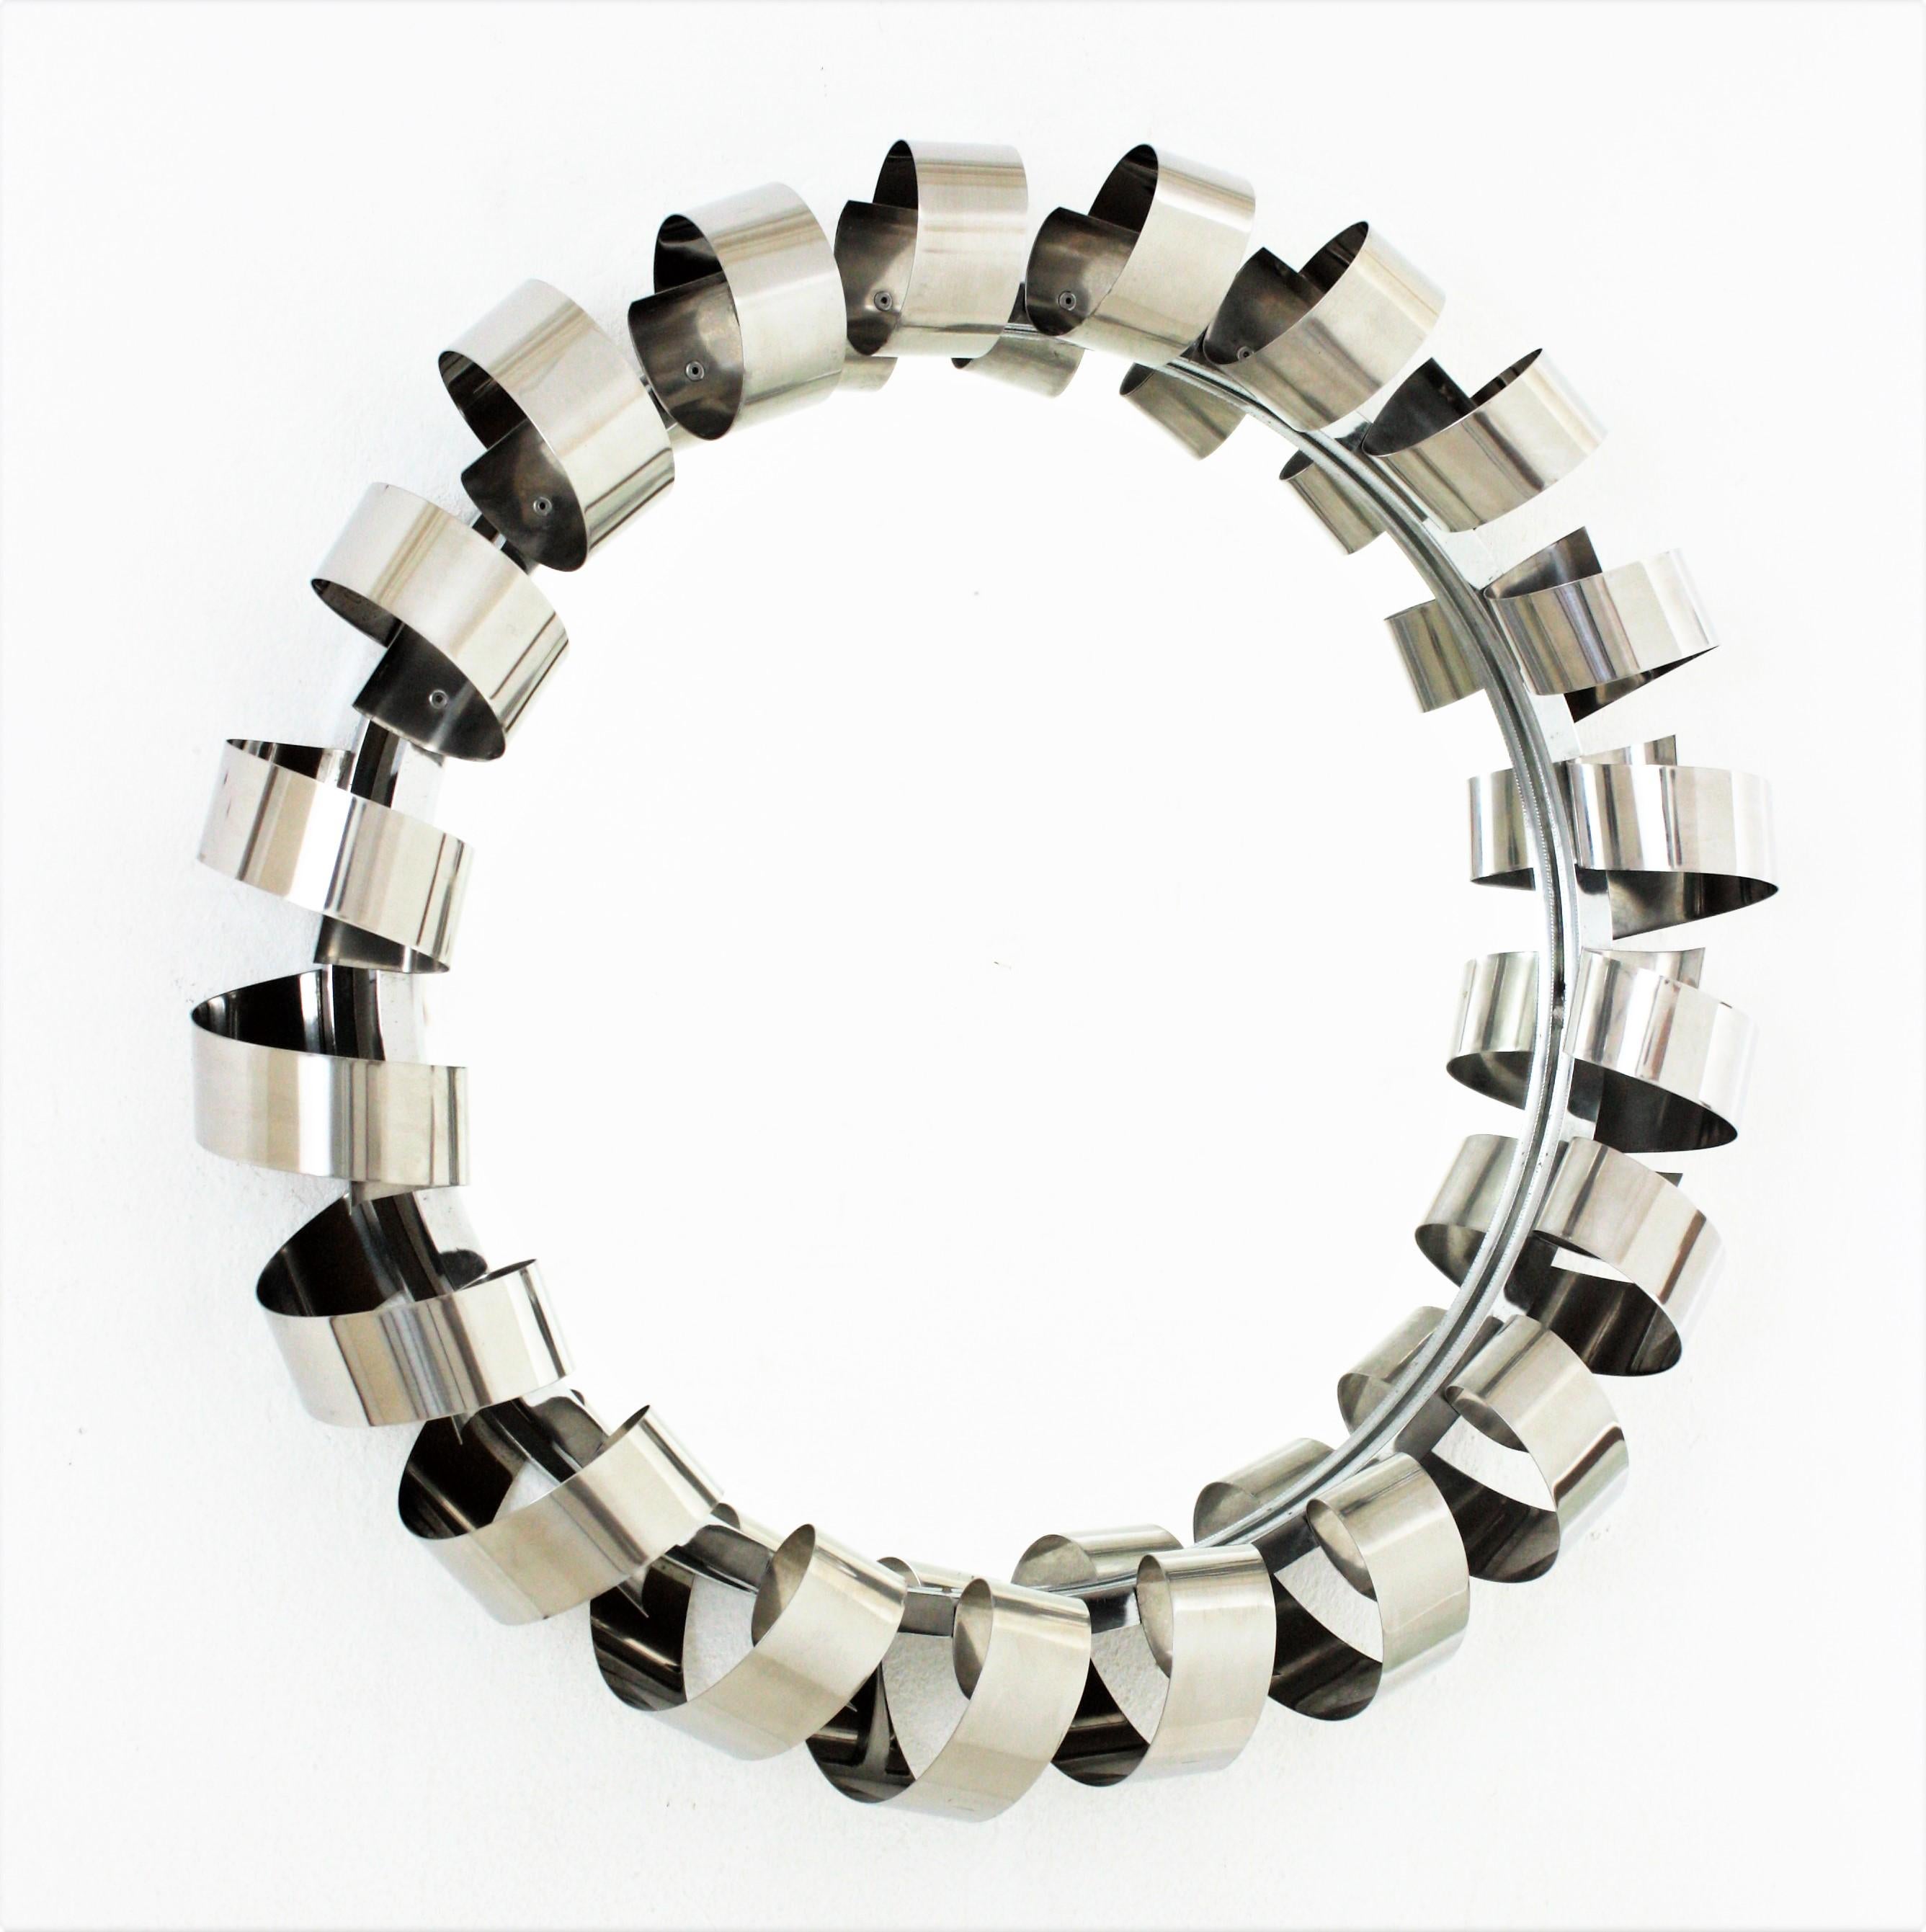 Midcentury Style Stahlspiralspiegel mit Hintergrundbeleuchtung, Italien, 1970er Jahre
Inspiriert von Reggiani-Designs verfügt dieser Spiegel über einen spiralförmigen Rahmen aus Edelstahl, der das zentrale Glas umgibt. 
Sobald der Spiegel beleuchtet